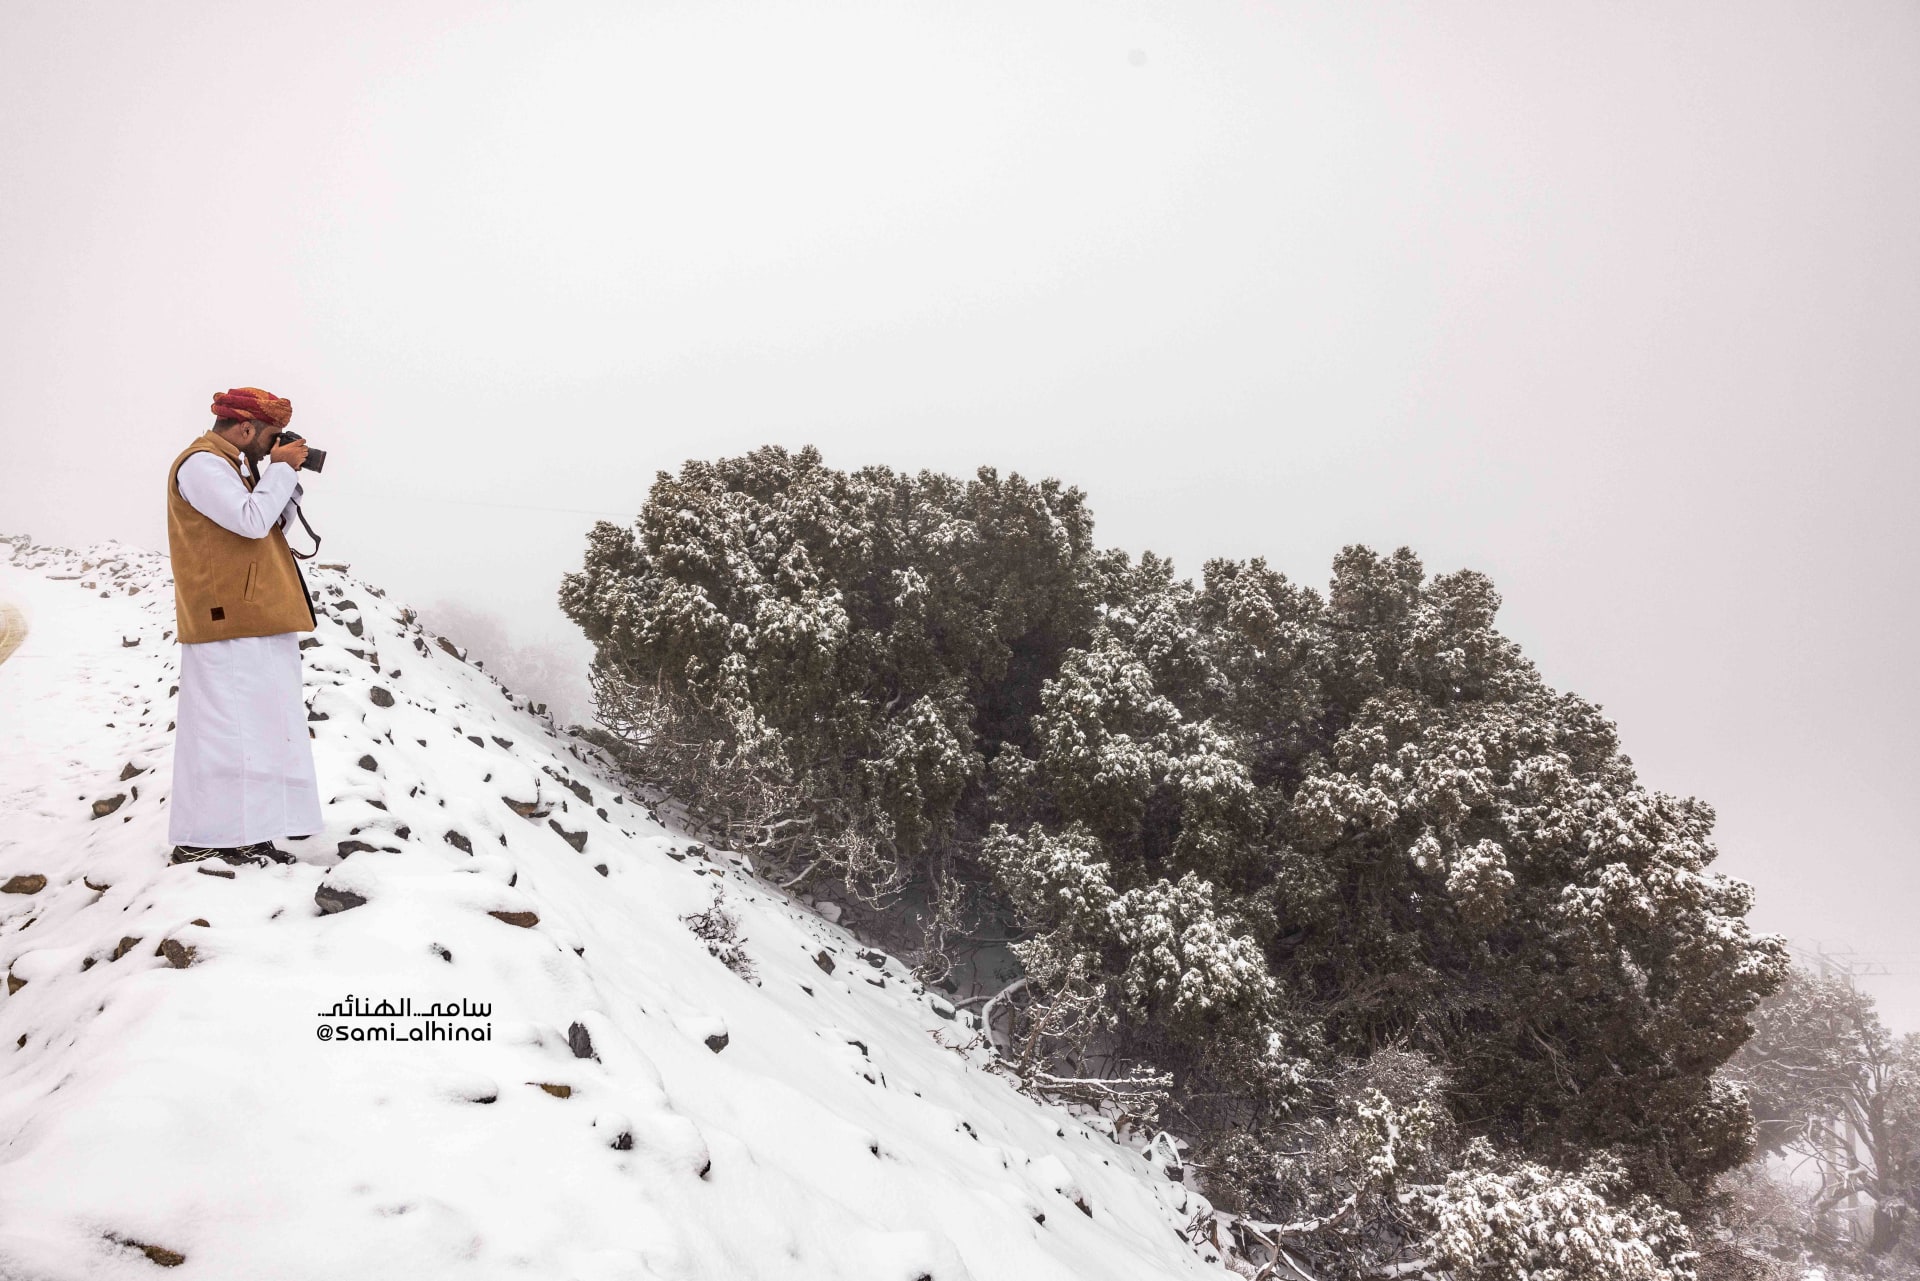 جبل شمس في سلطنة عُمان يكتسي بالثلوج ومصور يوثق لحظات عفوية في البرد القارس